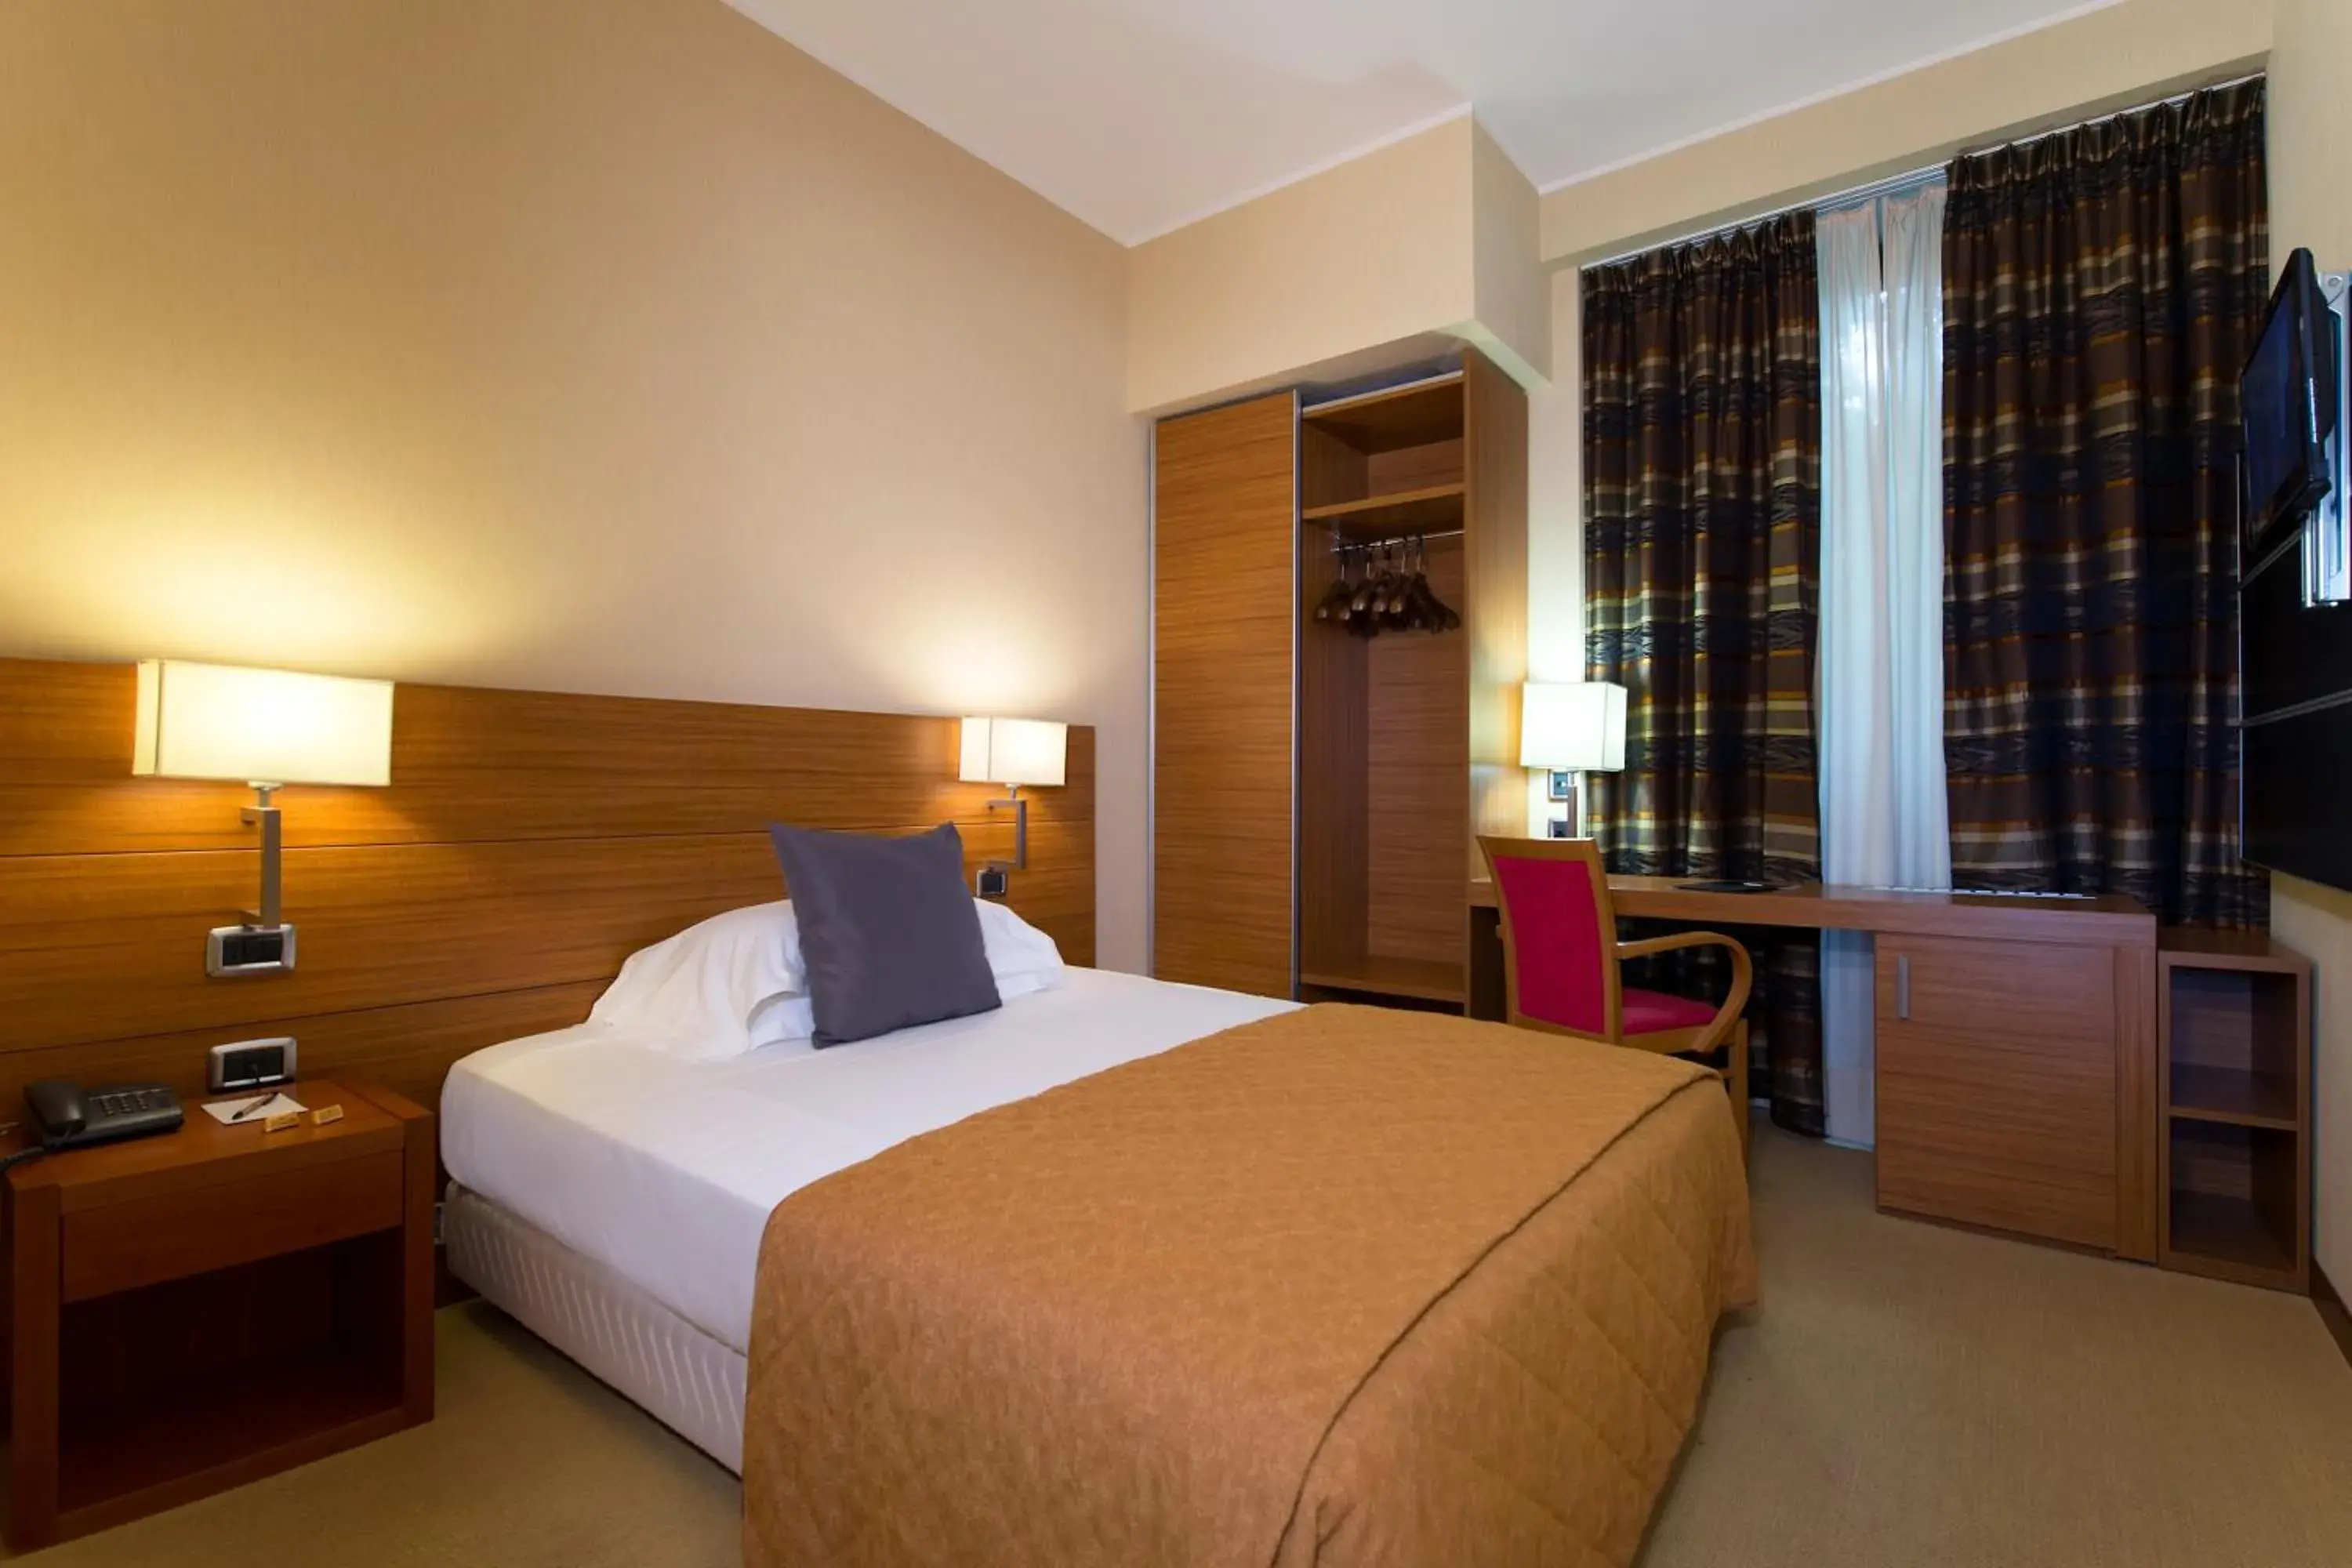 Bedroom, Room Photo in Cdh Hotel Parma & Congressi